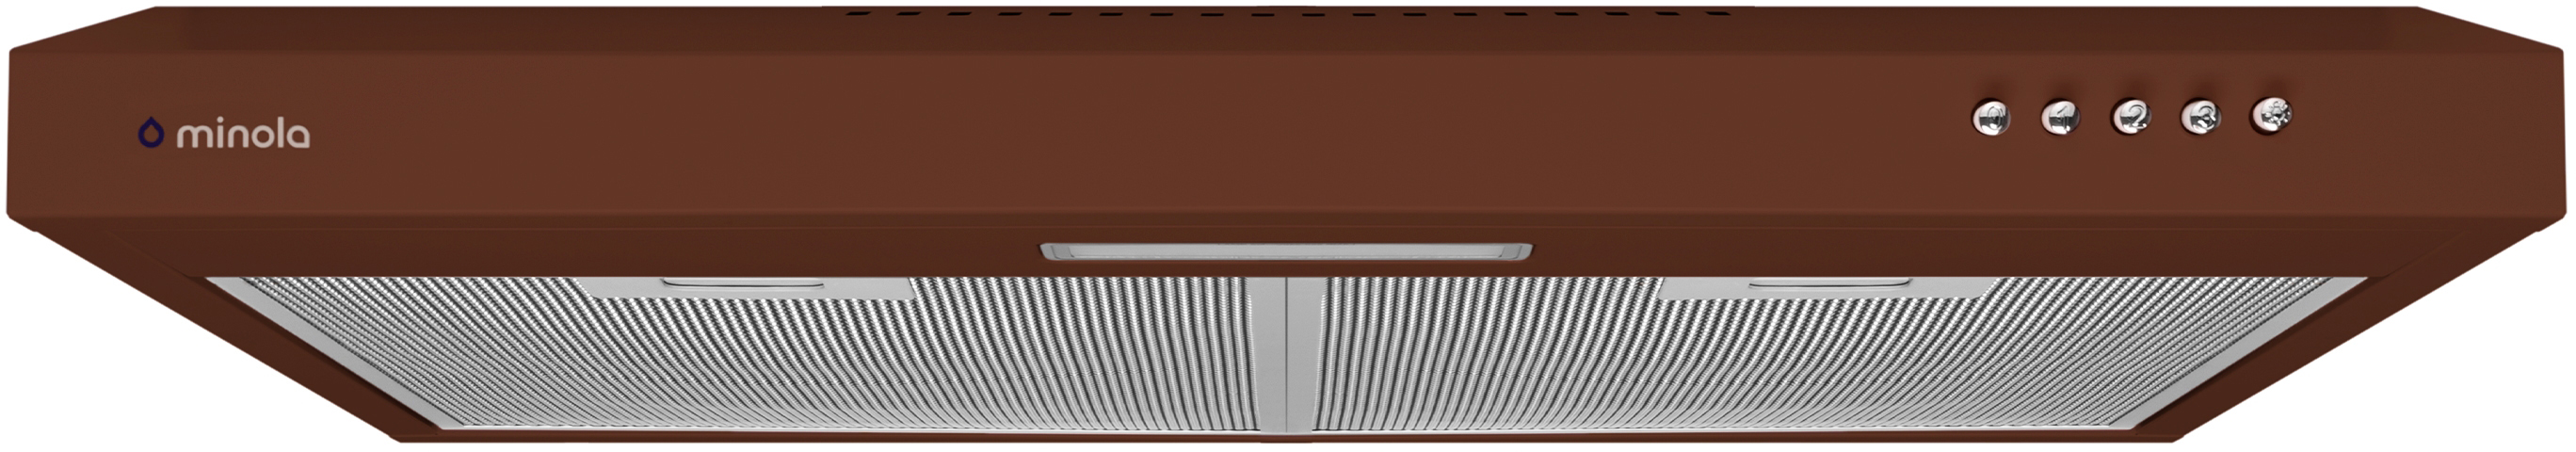 Витяжка кухонная плоская Minola HPL 613 BR в интернет-магазине, главное фото